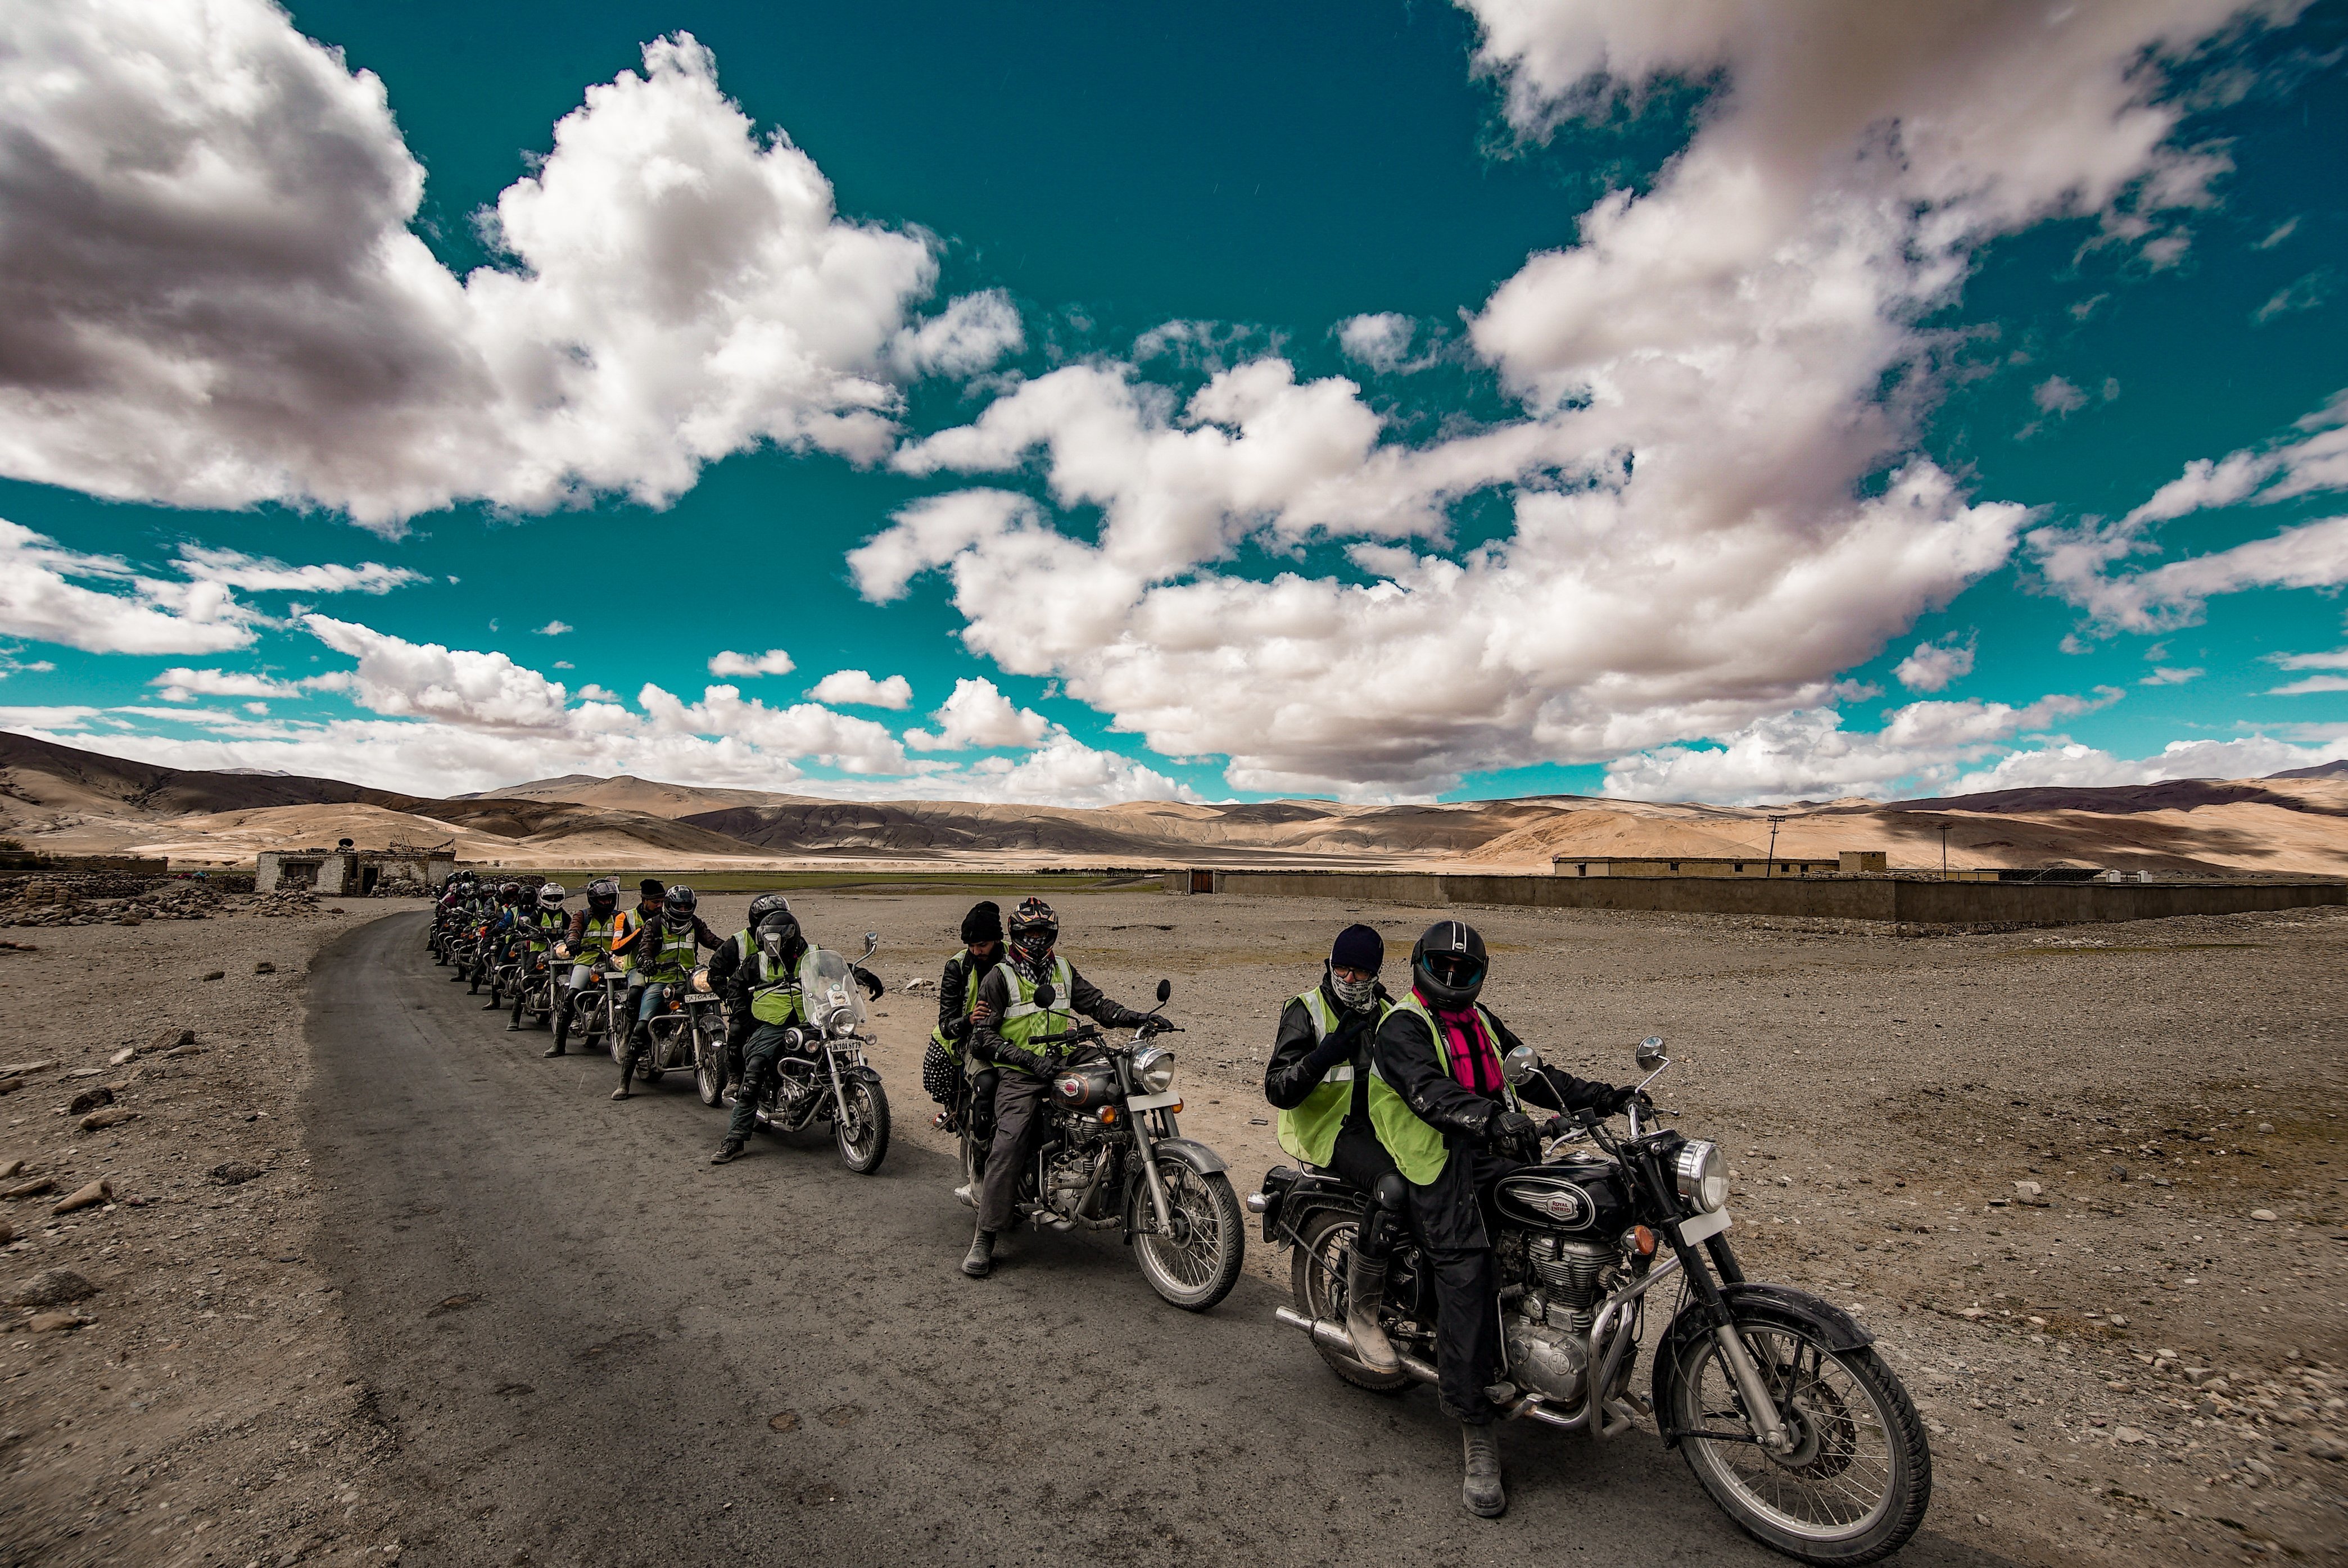 leh ladakh bike trip blog